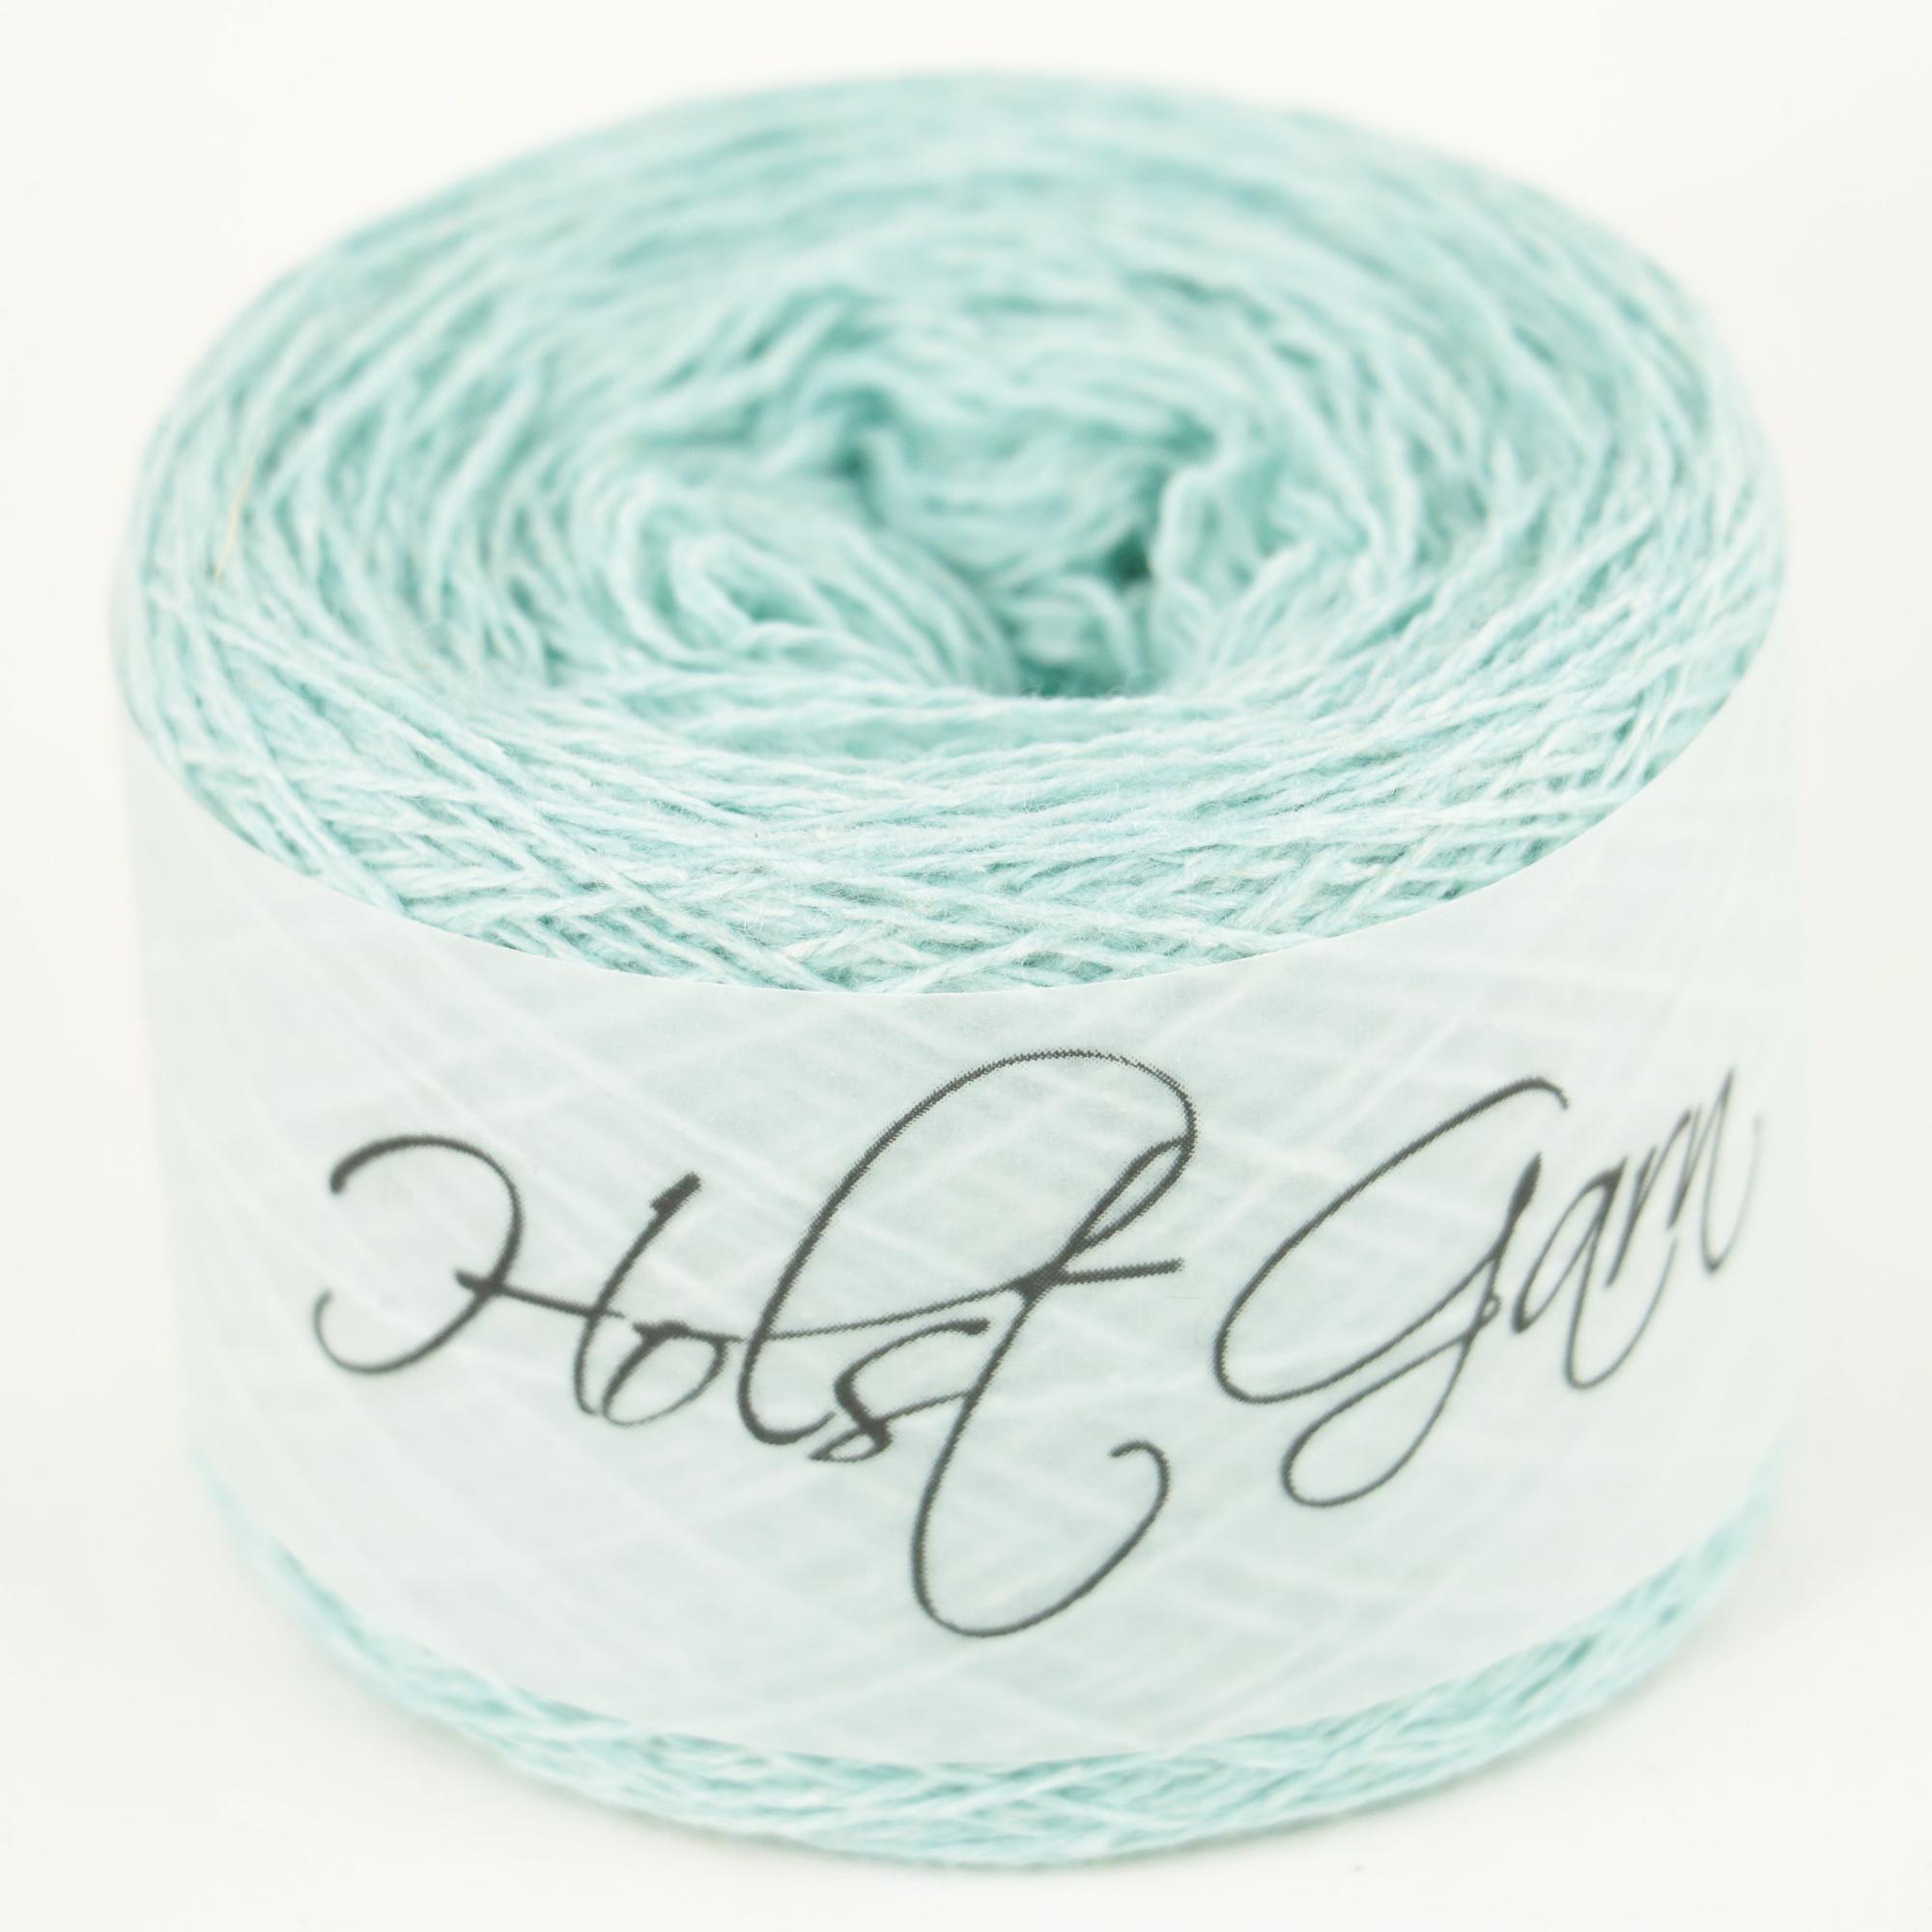 Holst Garn Coast - Wool/Cotton Garn Wool/Cotton Spearmint $4.24,-